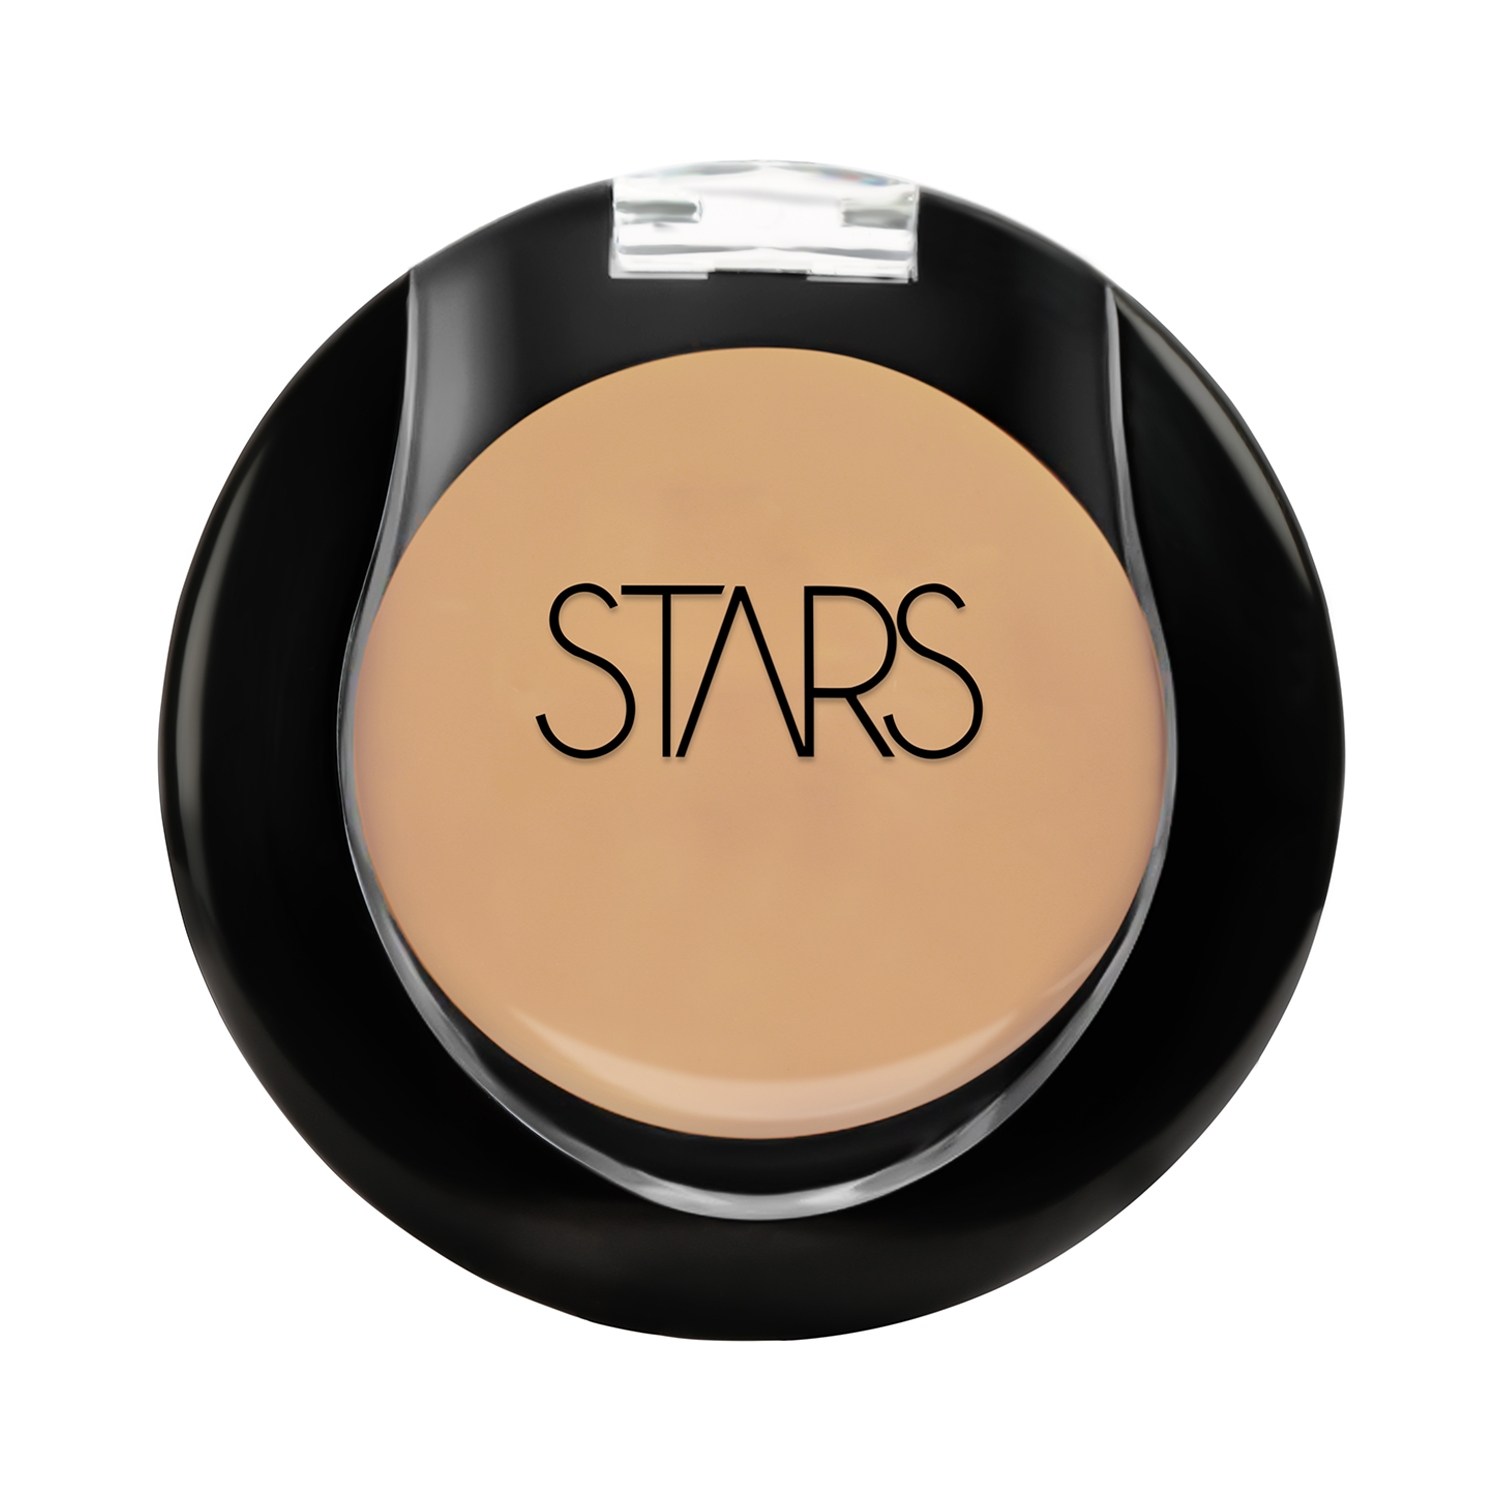 Stars Cosmetics | Stars Cosmetics Radiant Finish Full Coverage Face Makeup Cream Concealer - Medium (5g)